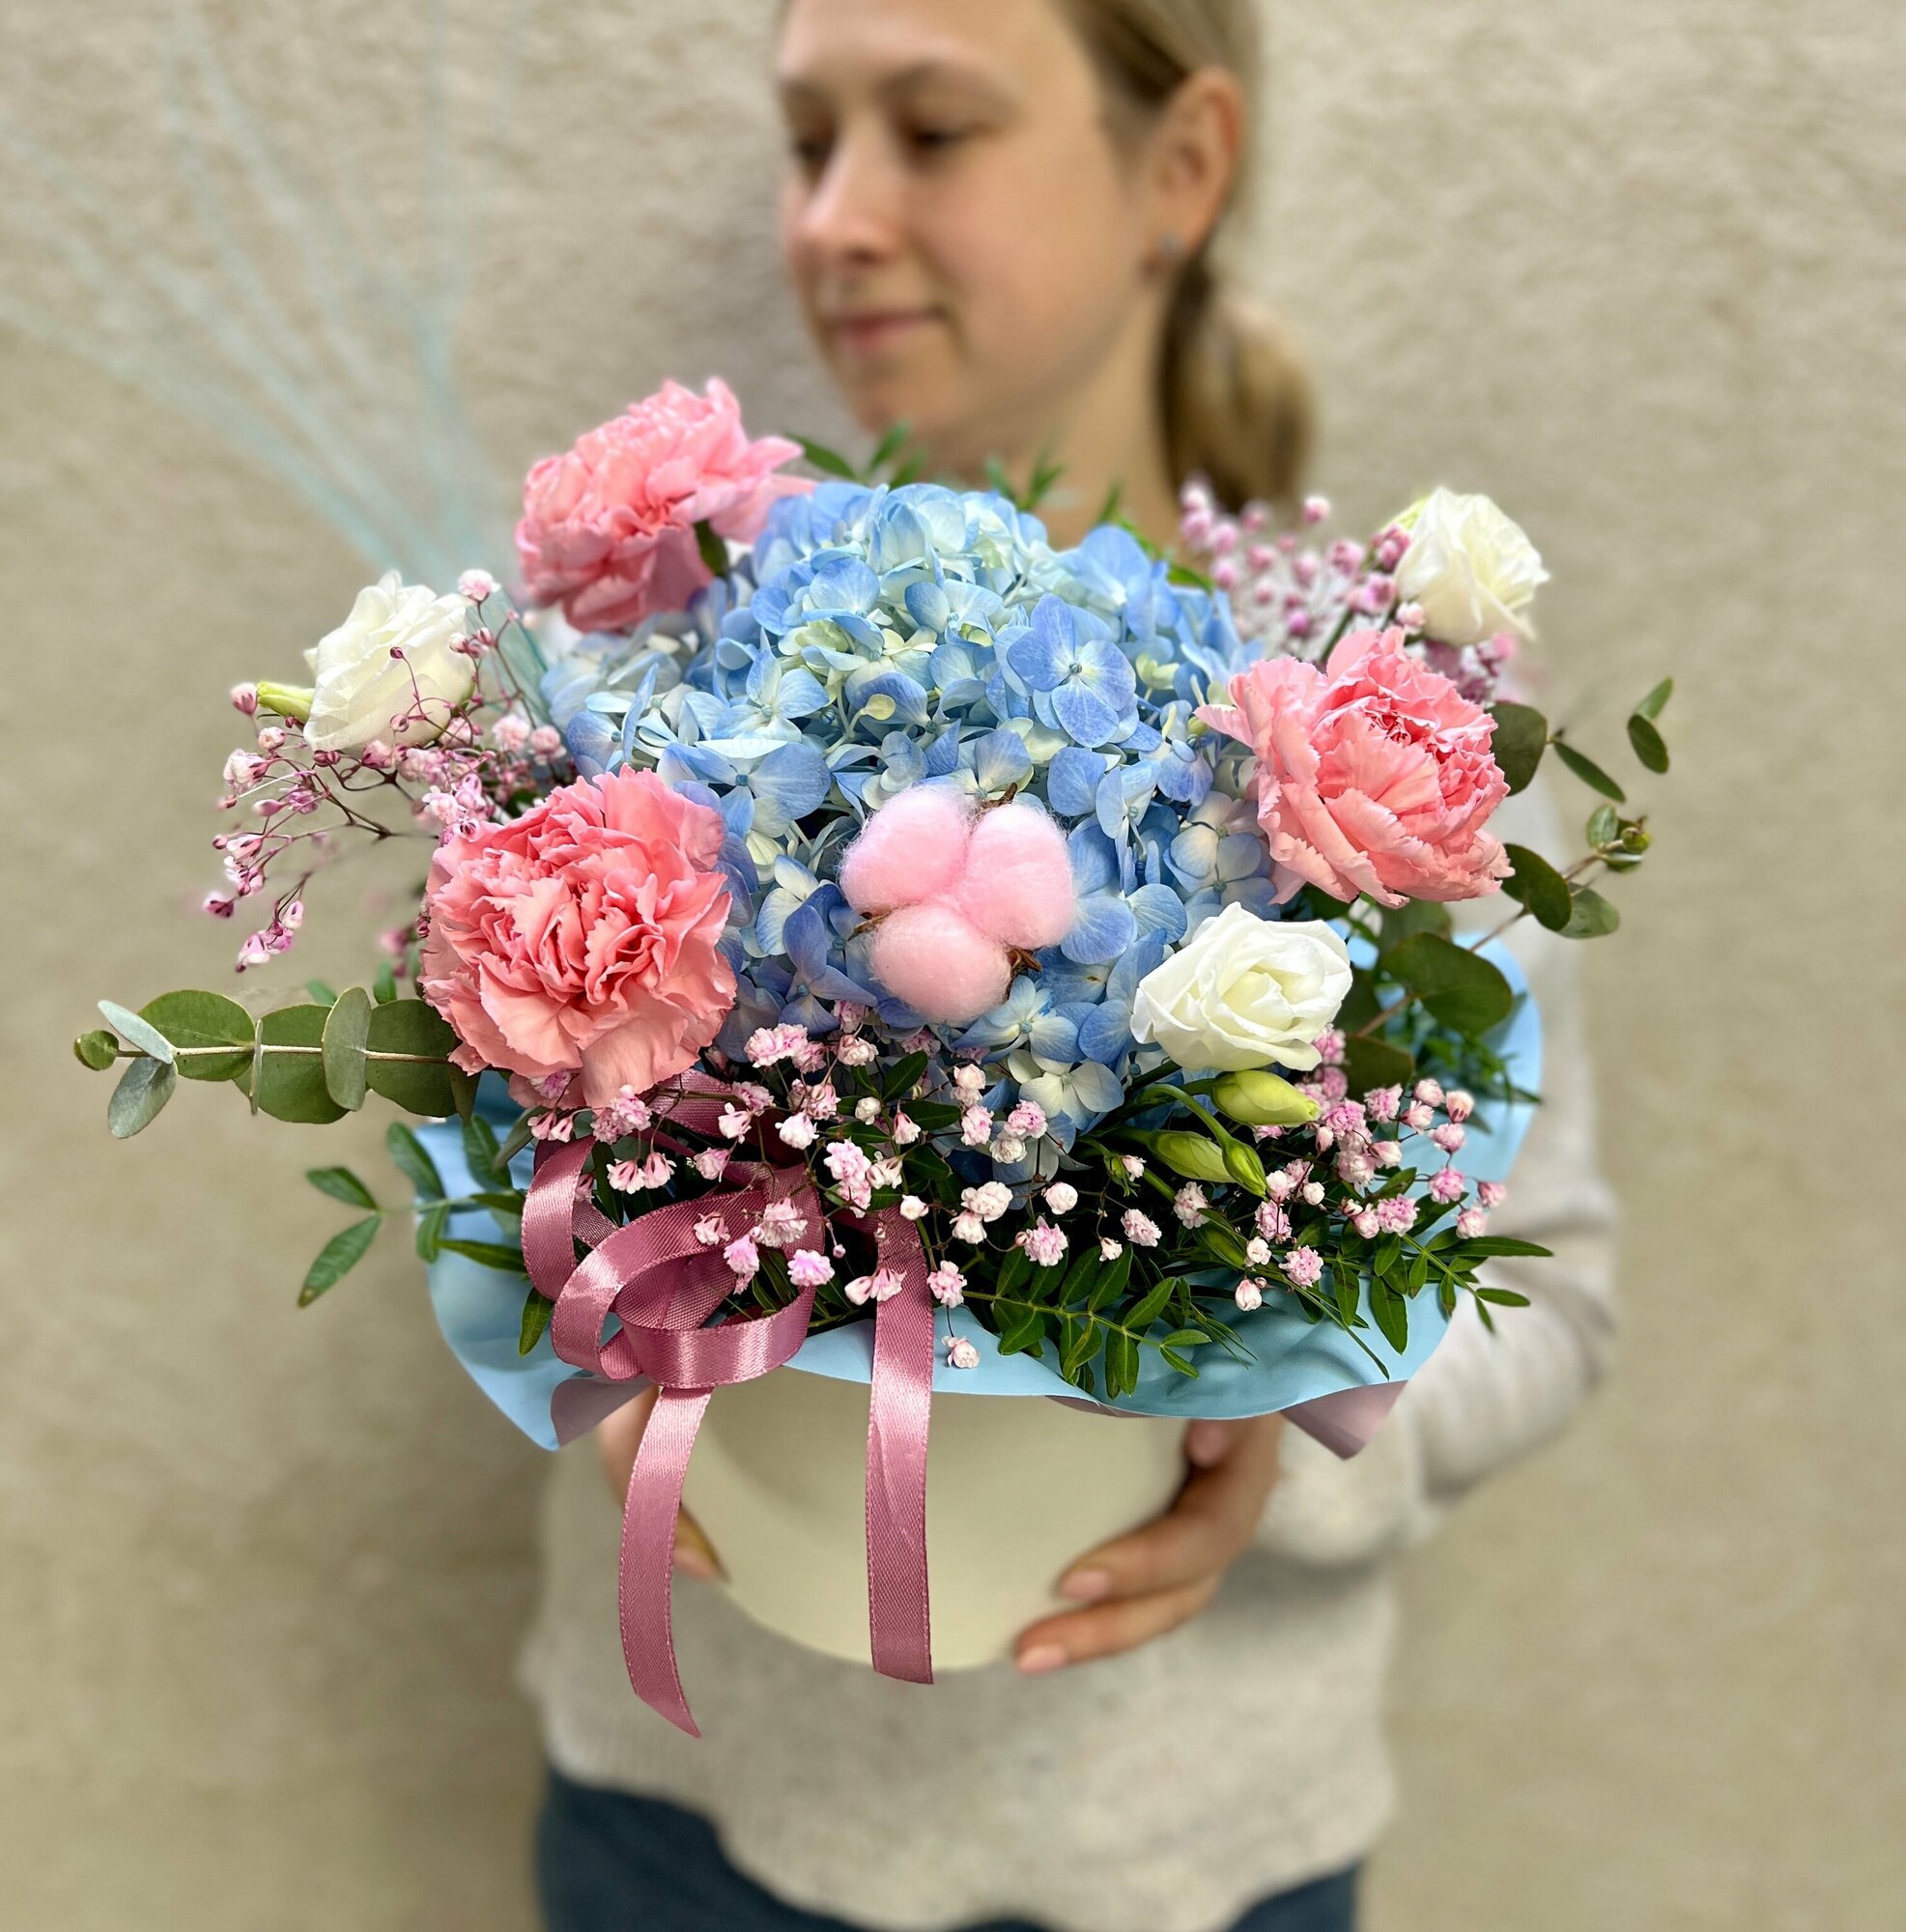 Живые цветы в коробке голубая гортензия и диантусы в цветочной композиции